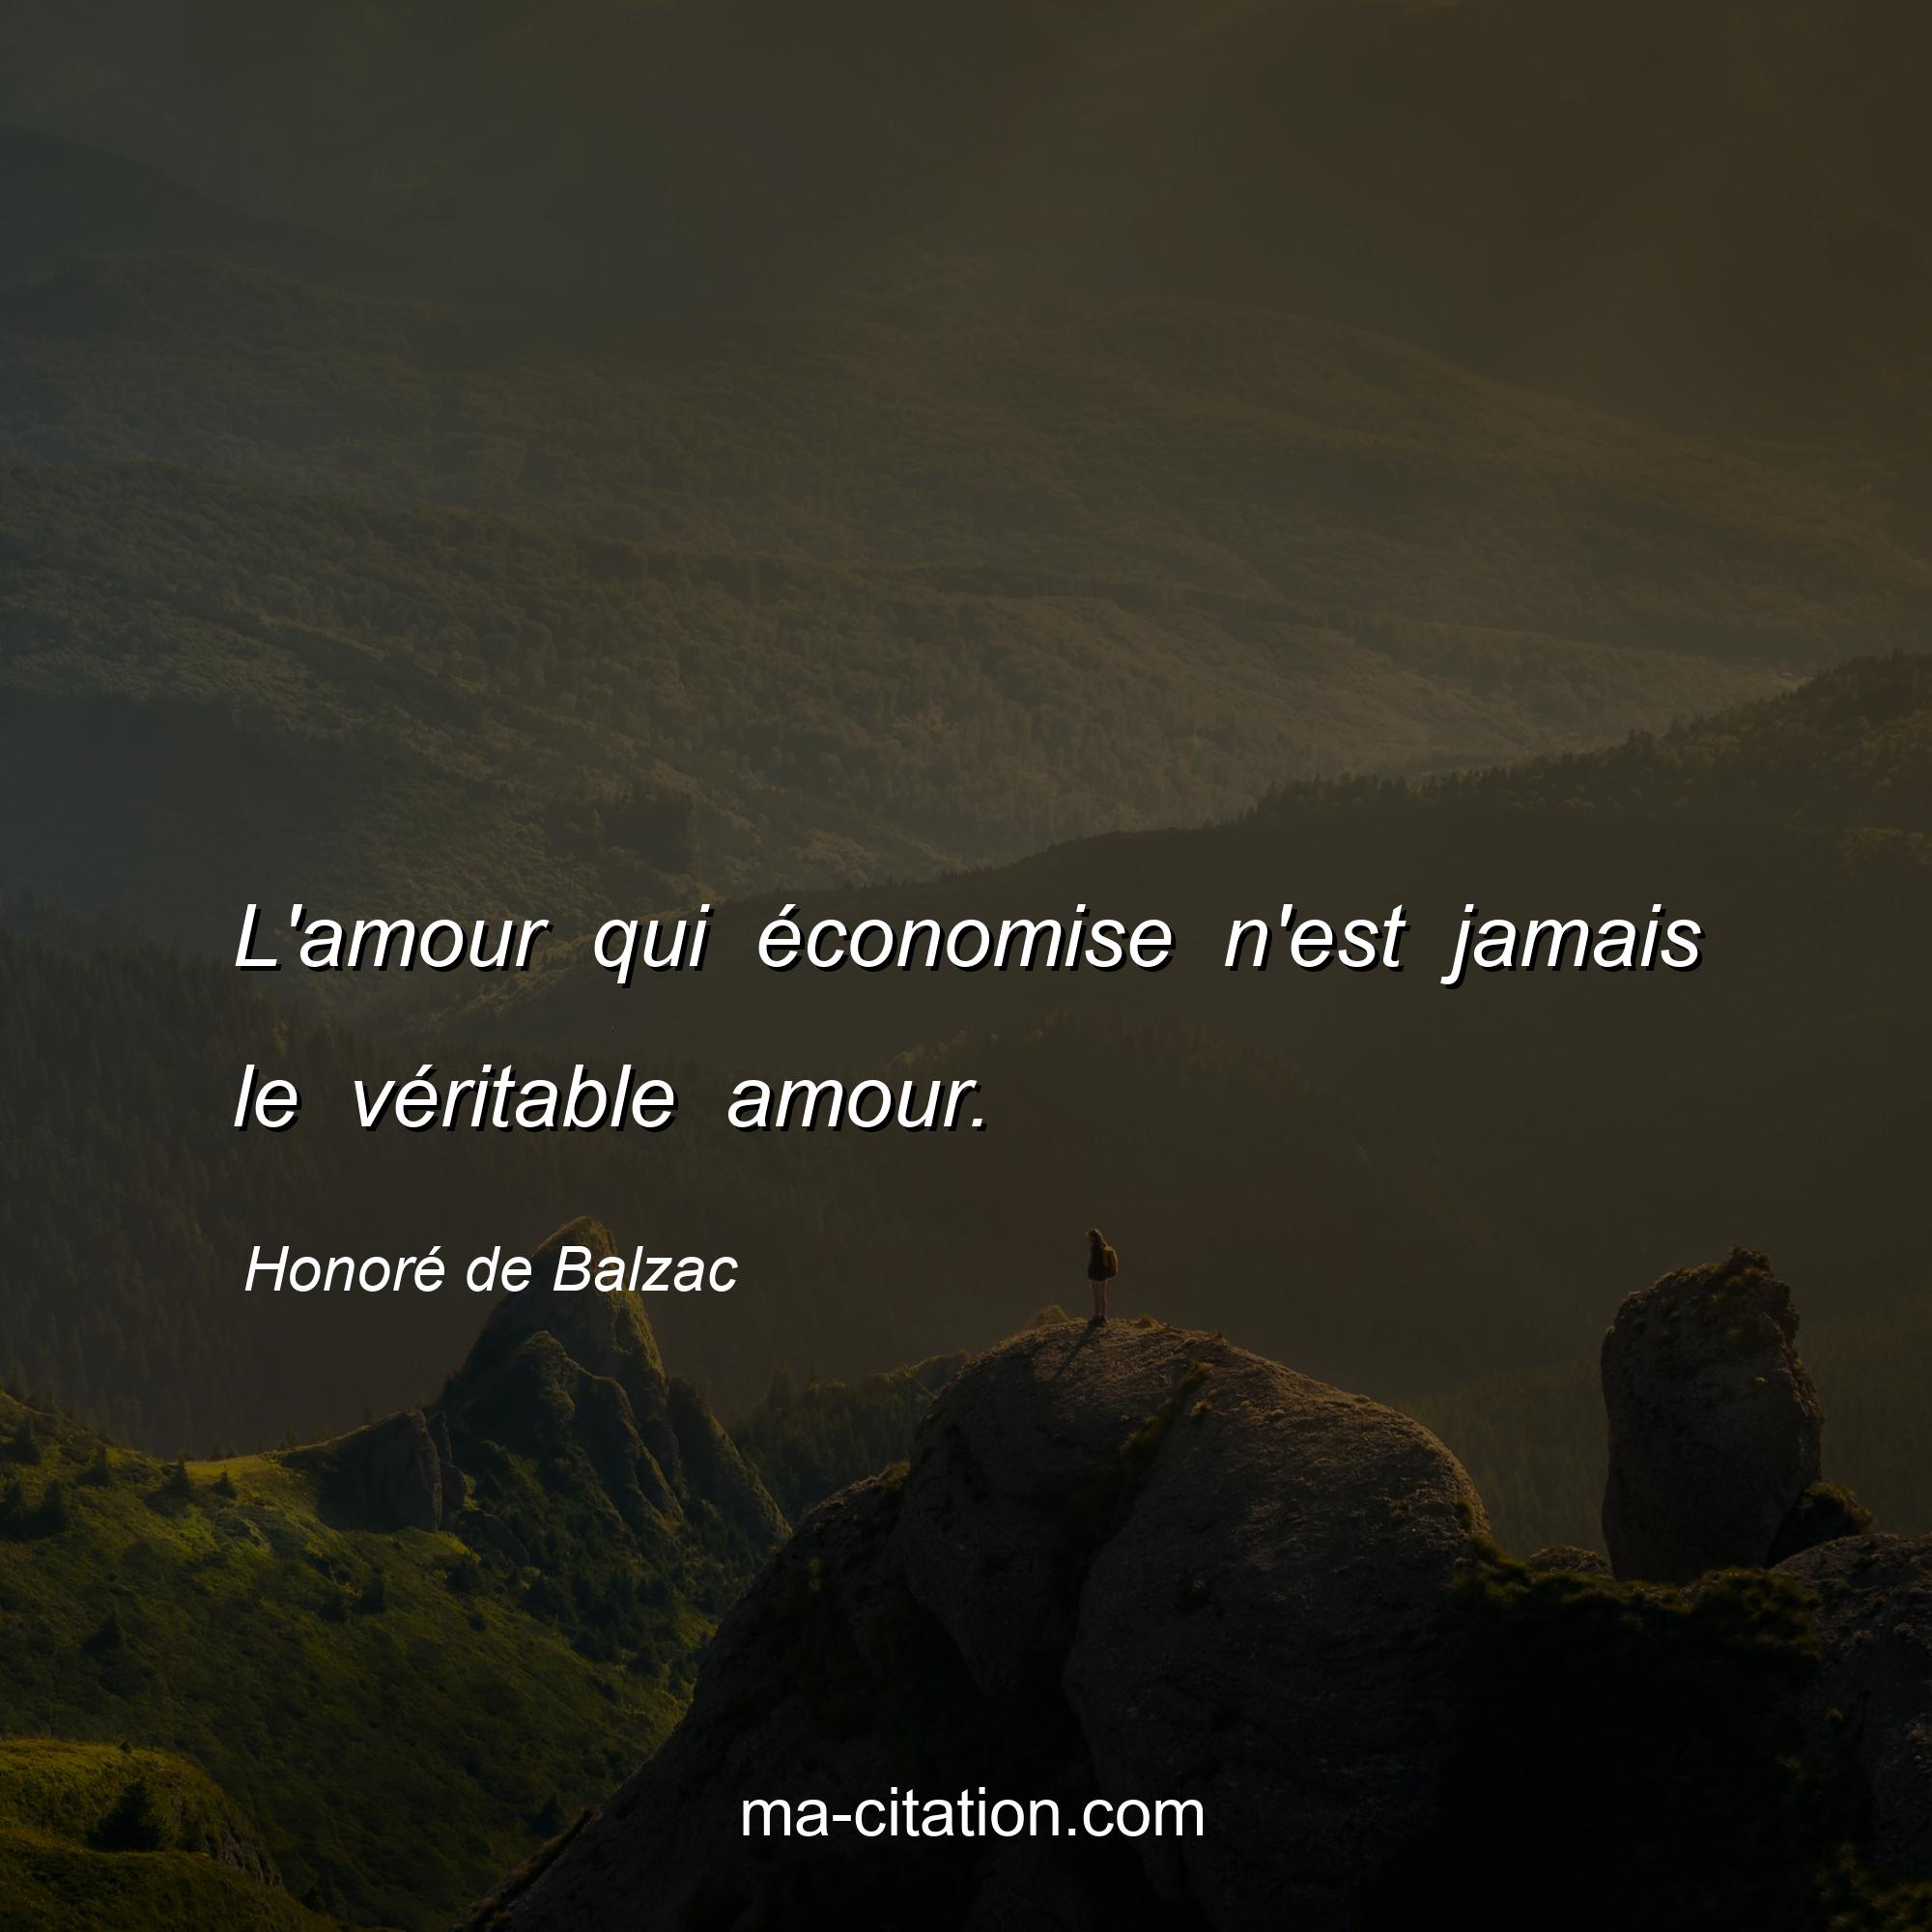 Honoré de Balzac : L'amour qui économise n'est jamais le véritable amour.